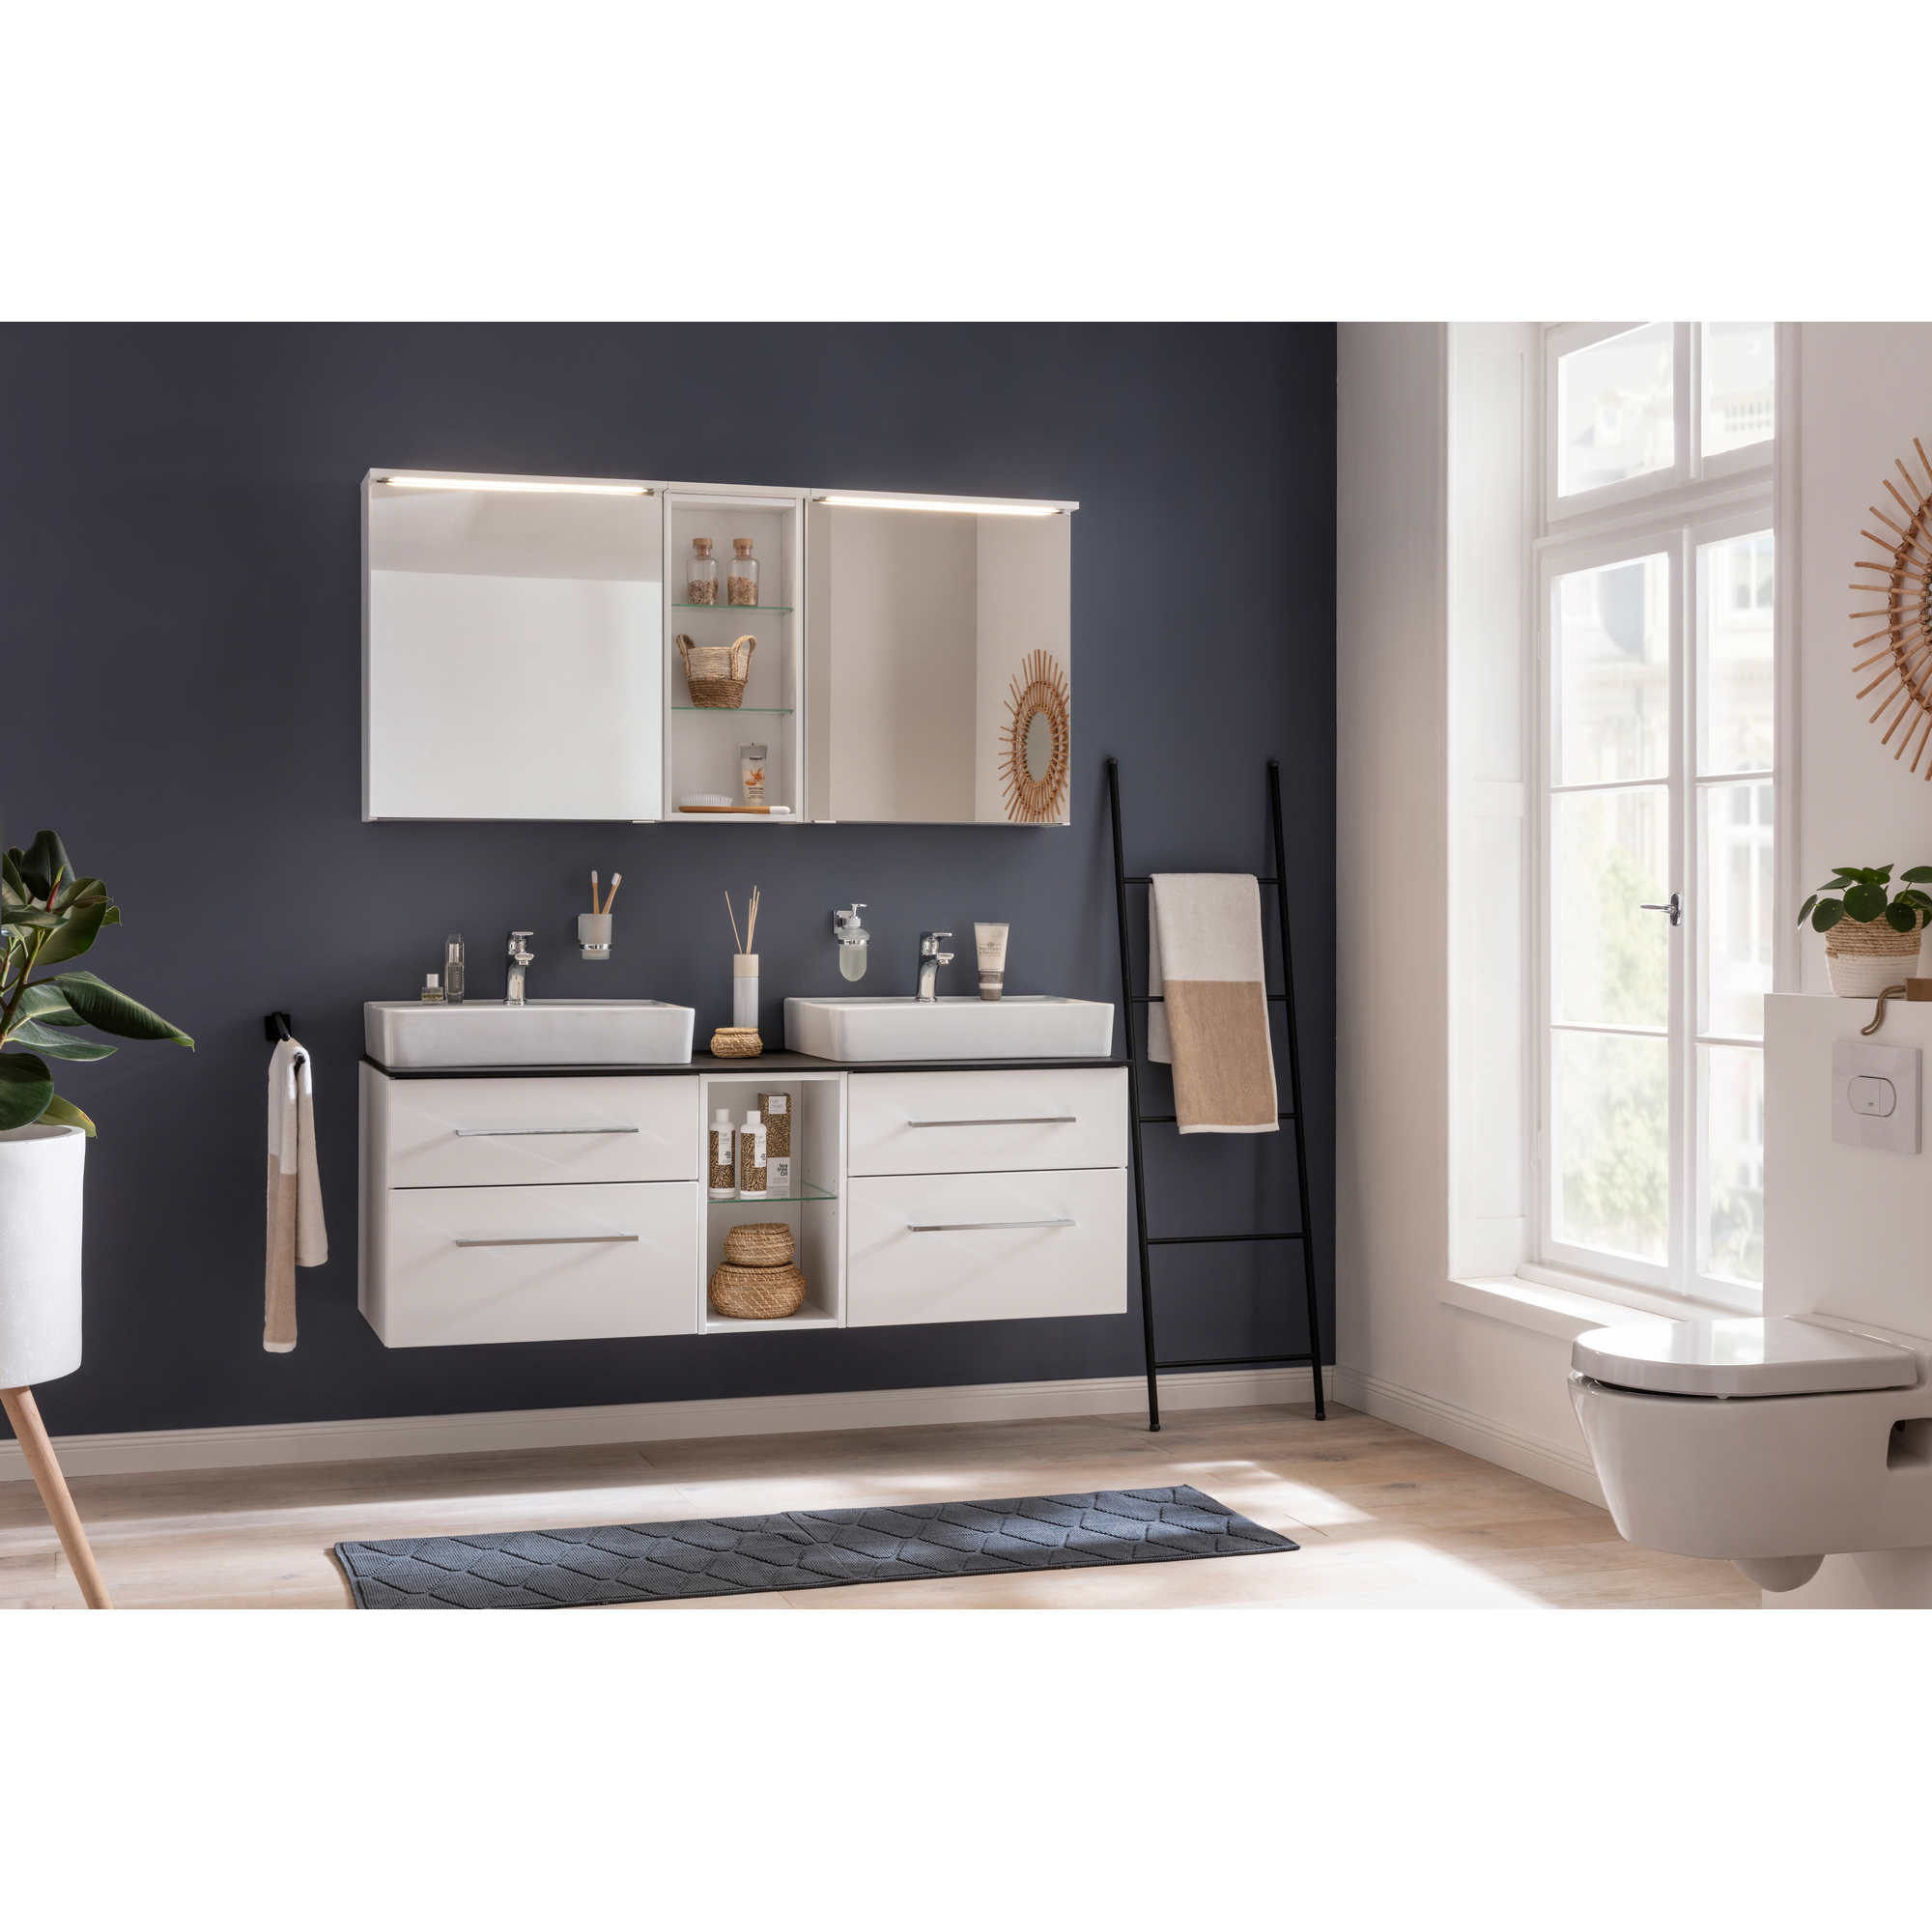 Waschtischunterschrank 'Oxford' weiß 60 x 50,9 x 48,8 cm + product picture